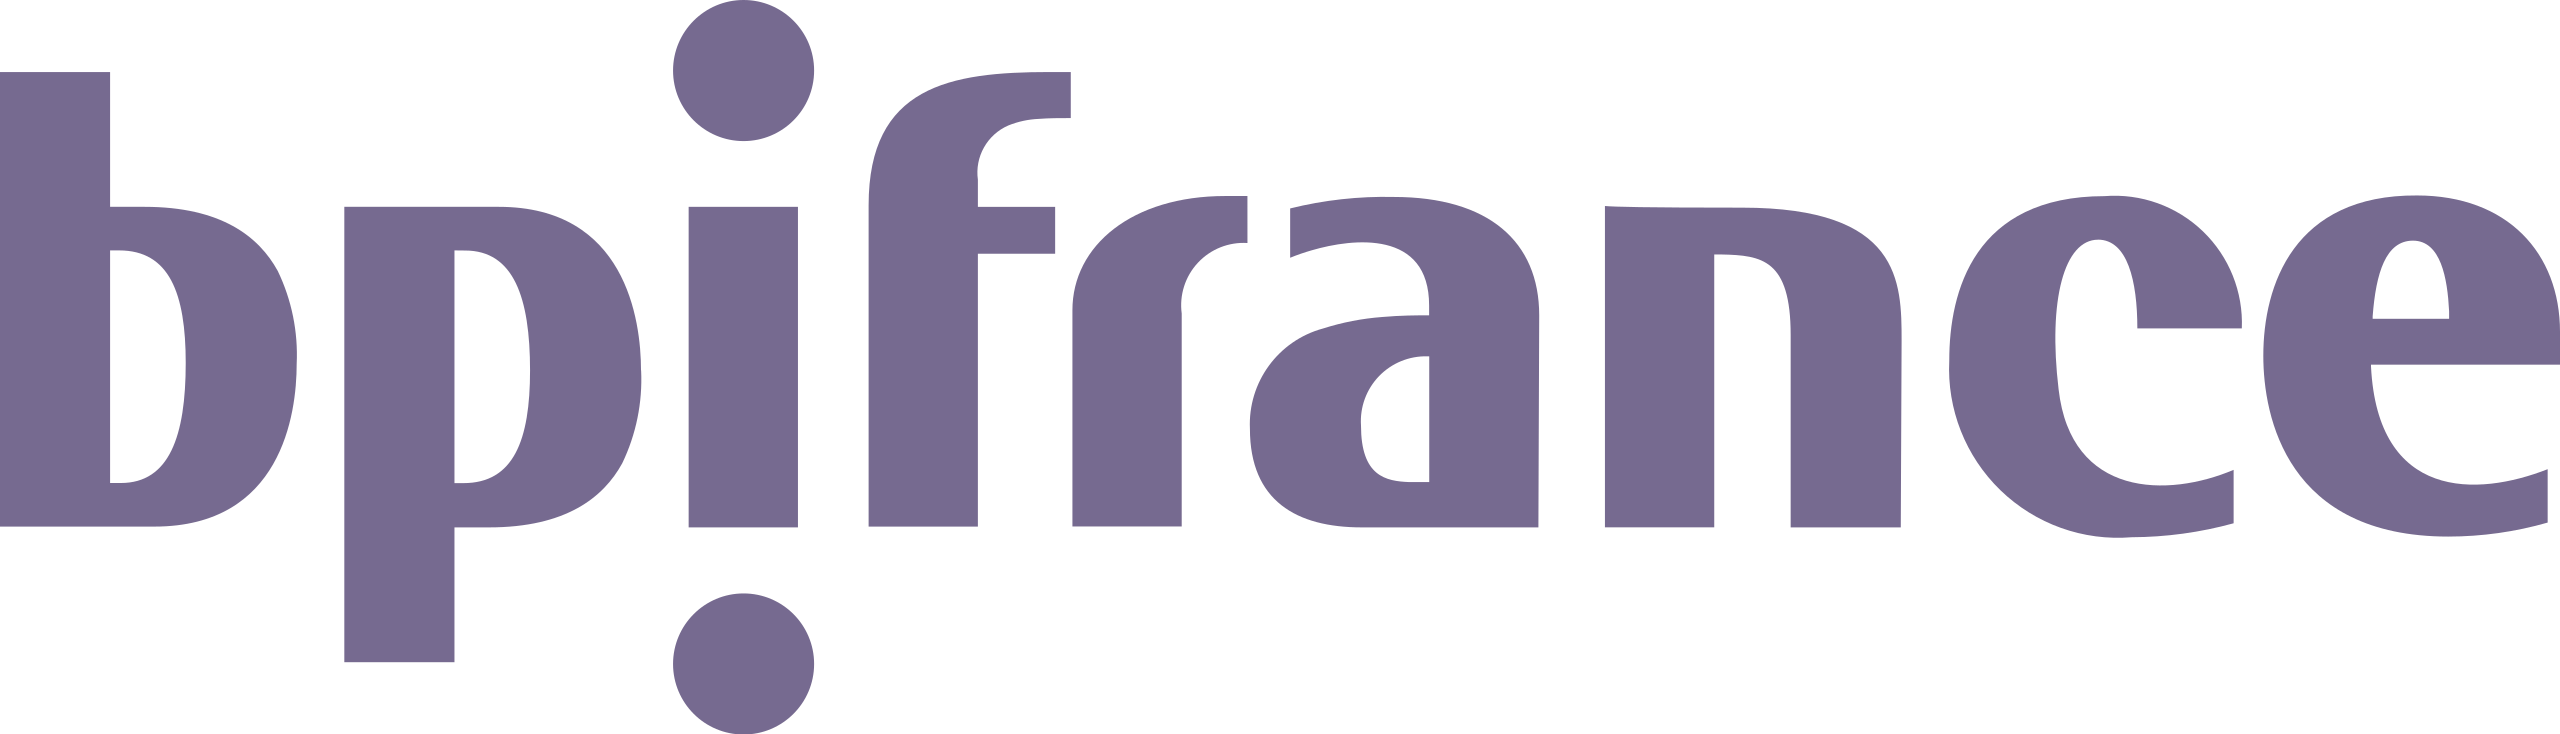 Logo_Bpifrance (1)